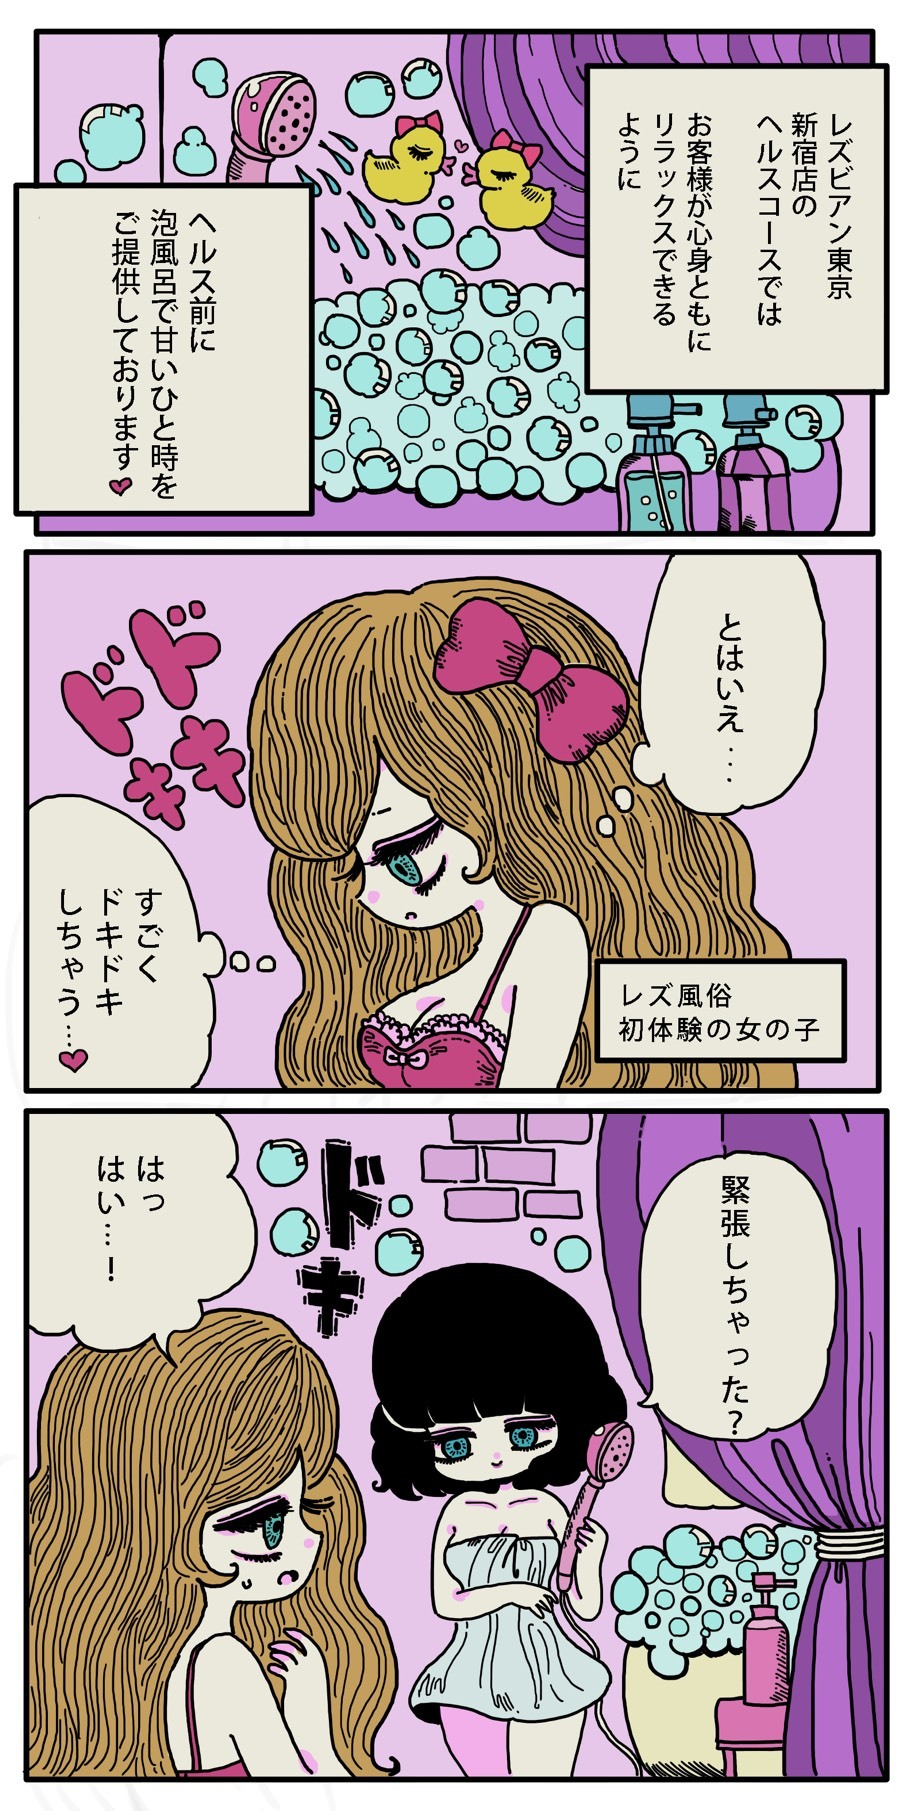 レズビアン新宿 漫画3-1